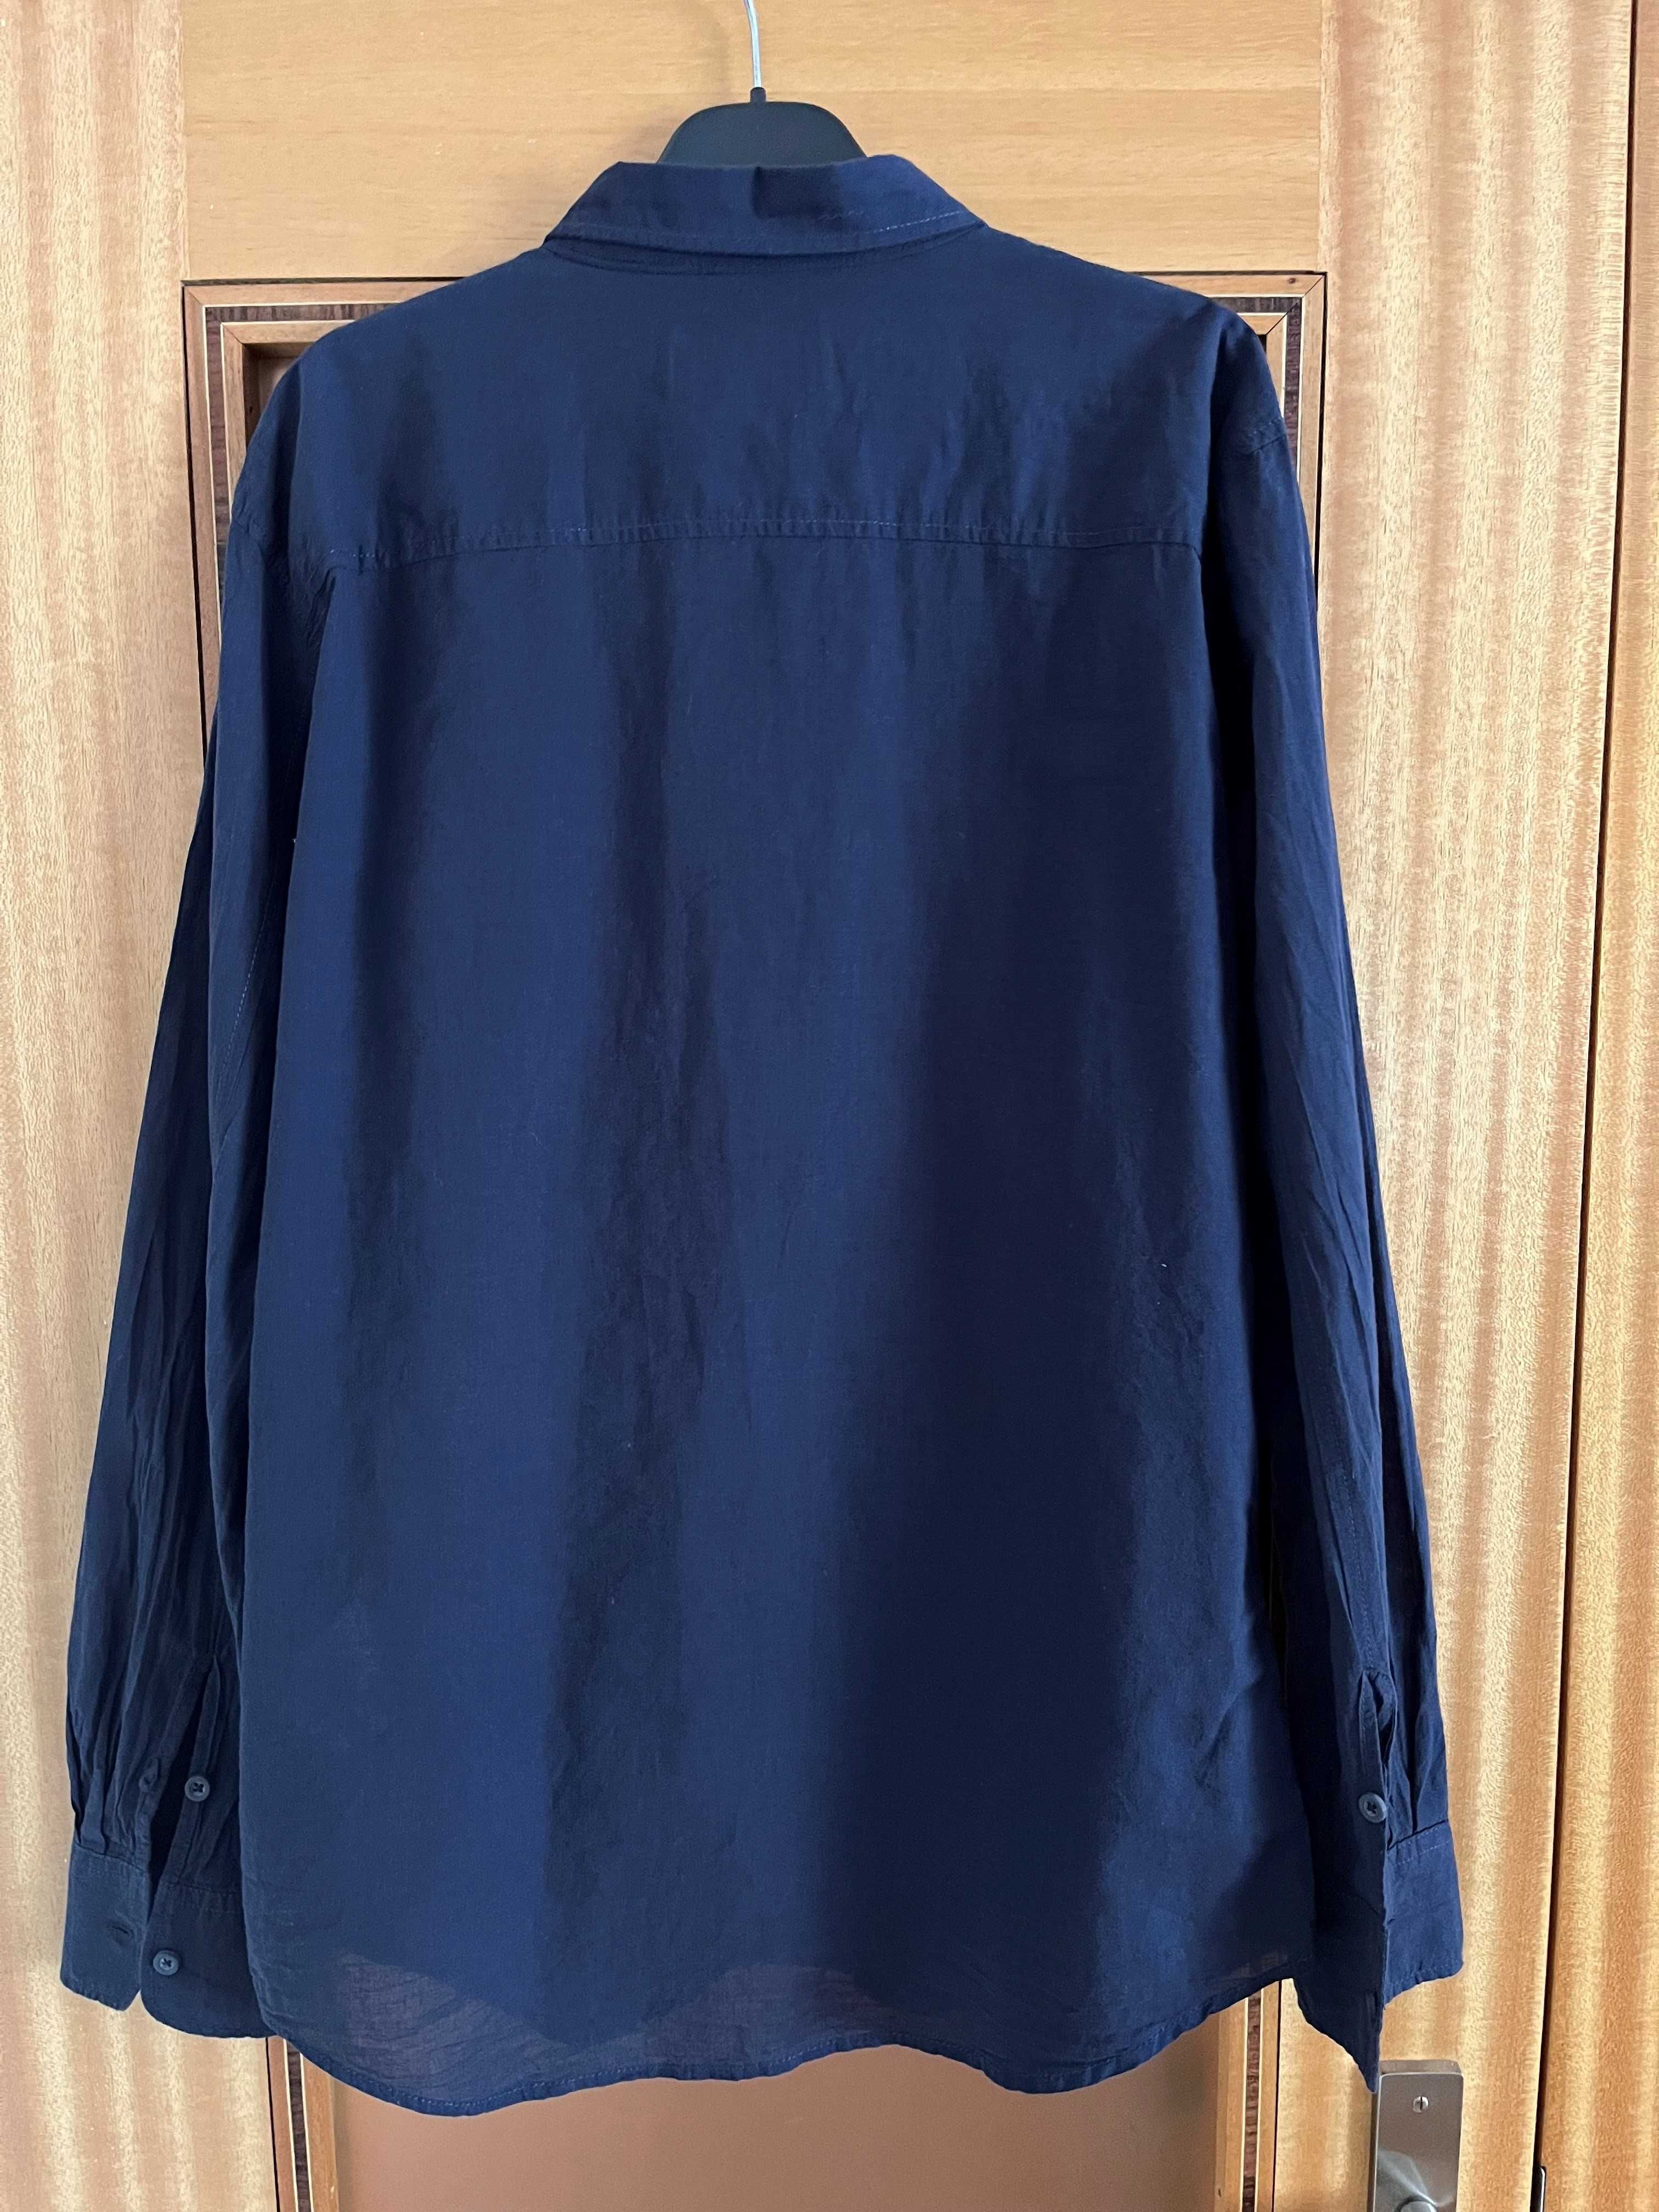 Camisa azul da Pull&Bear - Homem - Tamanho M